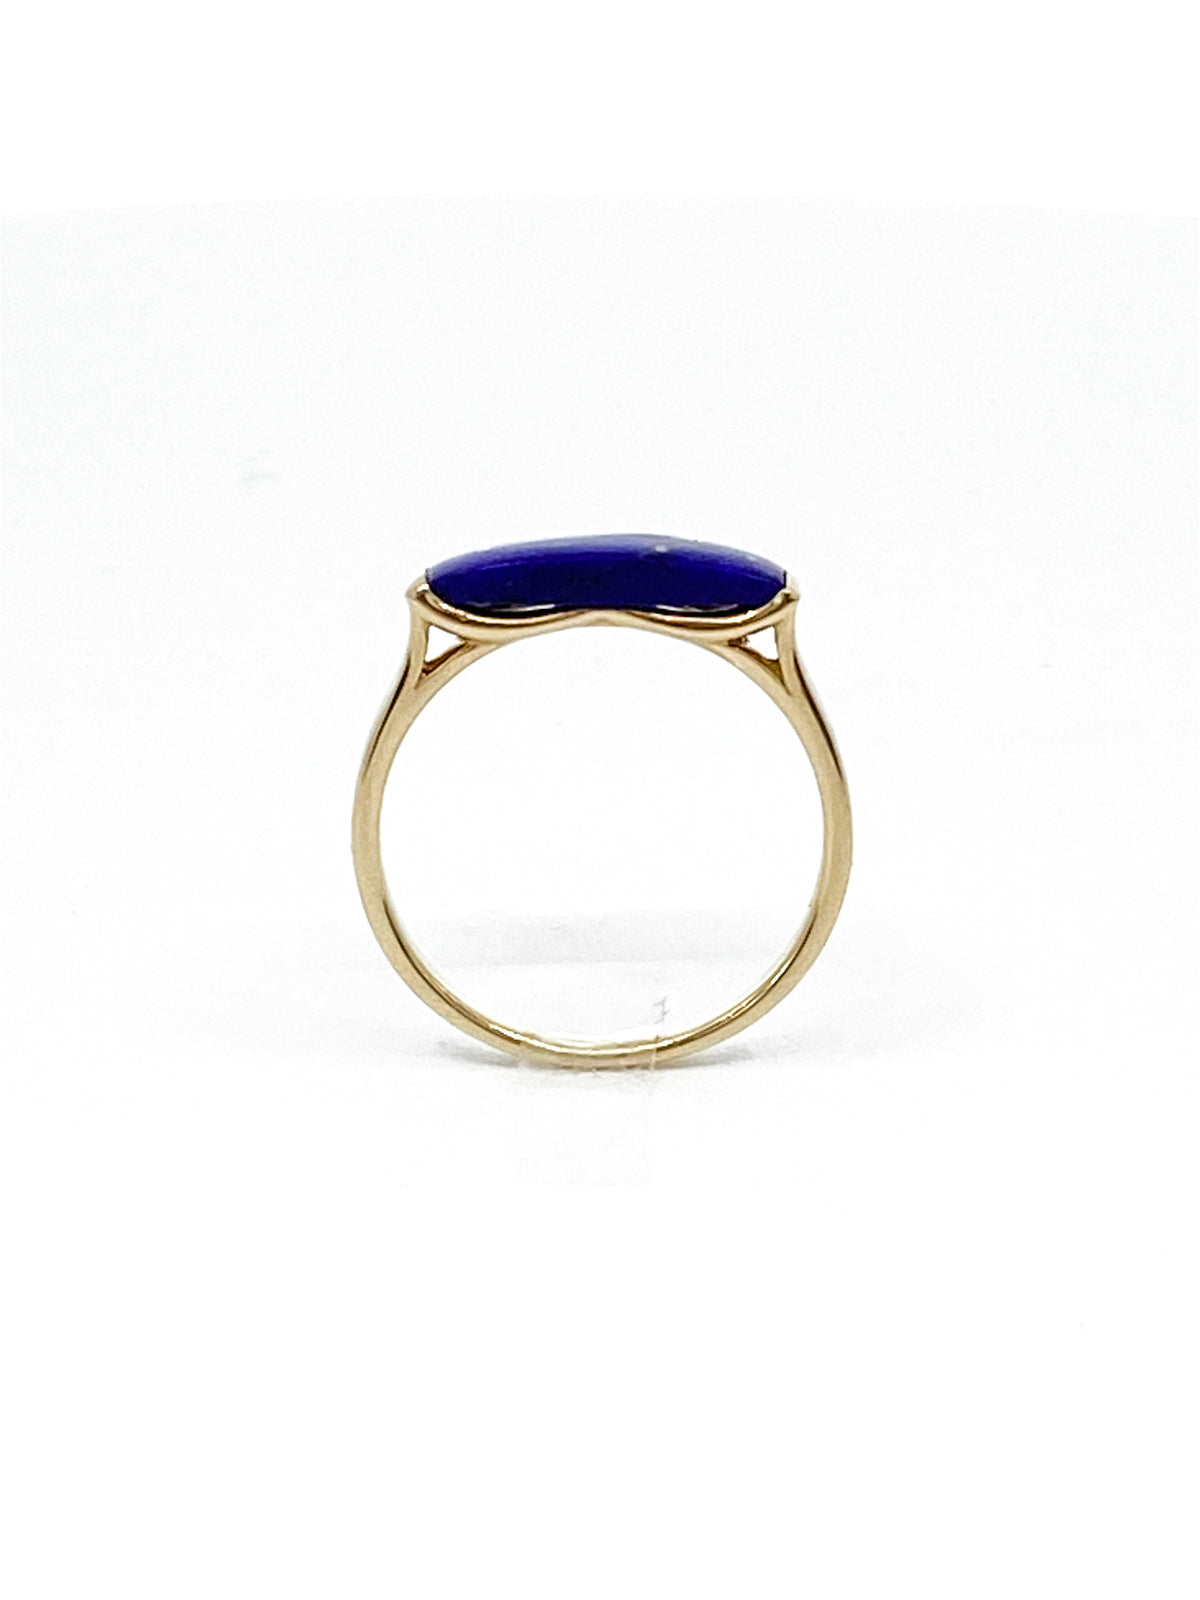 10K Yellow Gold 14mm Genuine Lapis Lazuli Ring, size 6.5